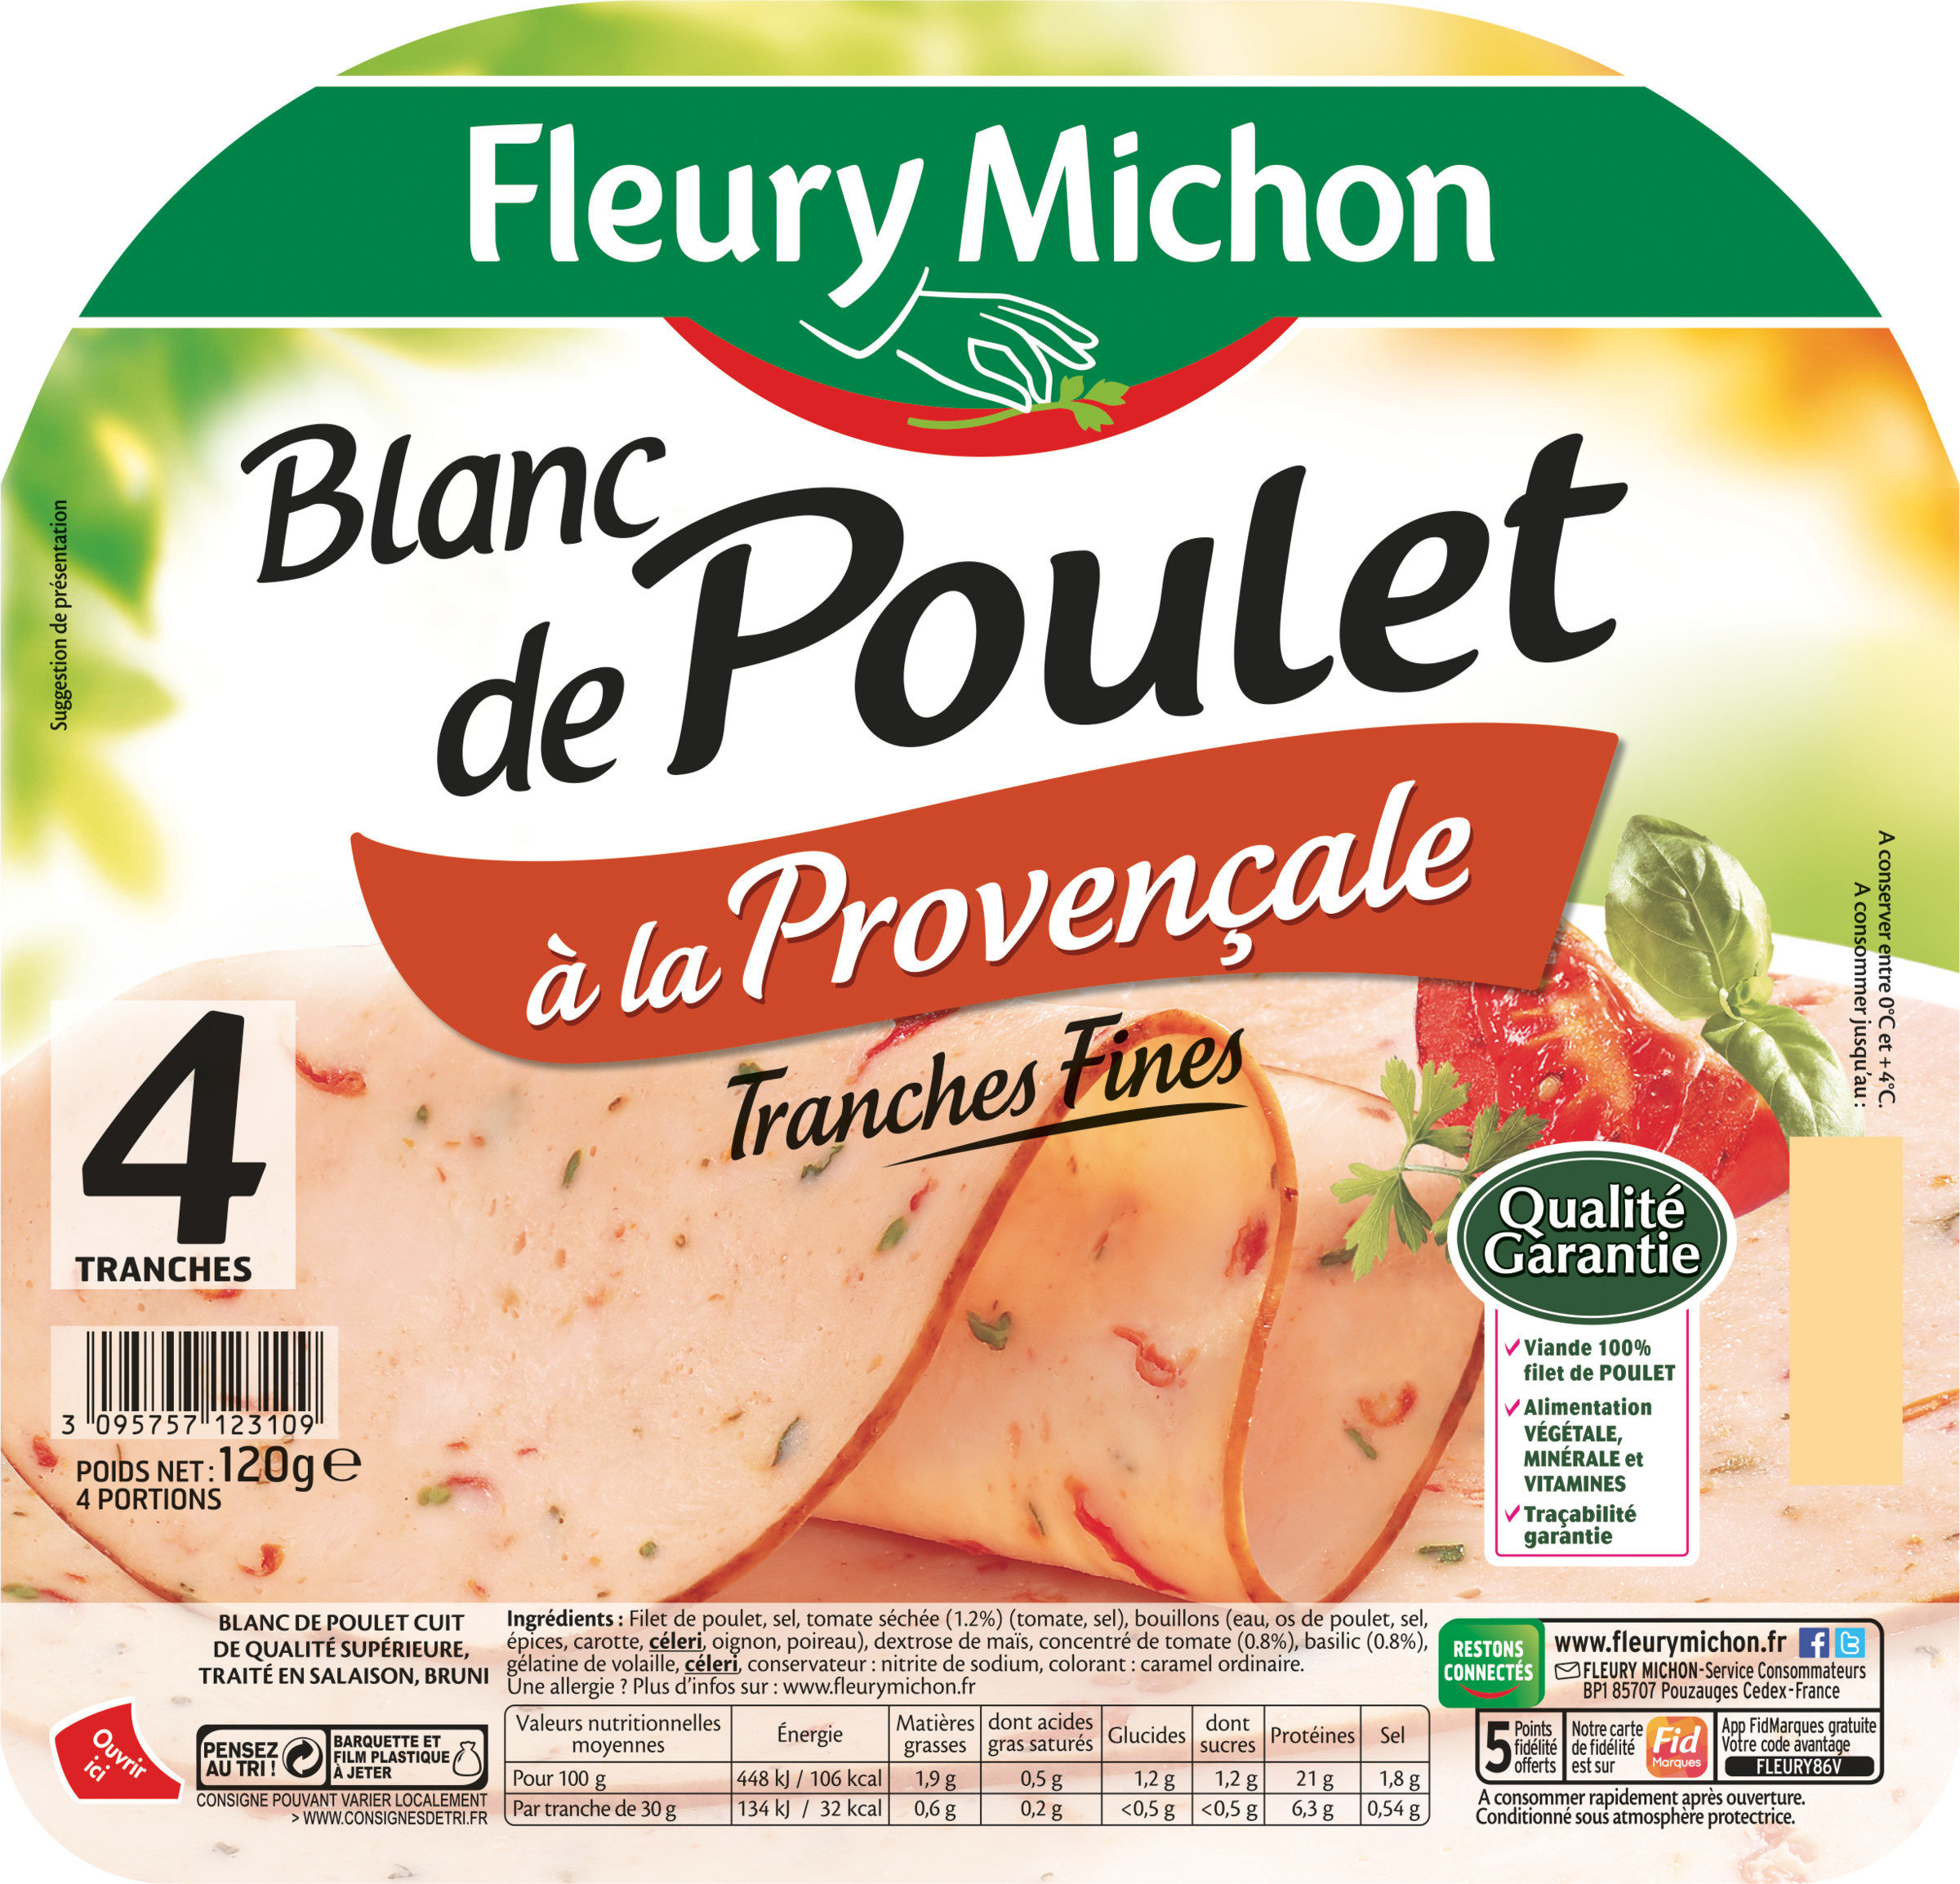 Blanc de Poulet à la Provençale - 4 tranches fines - Produit